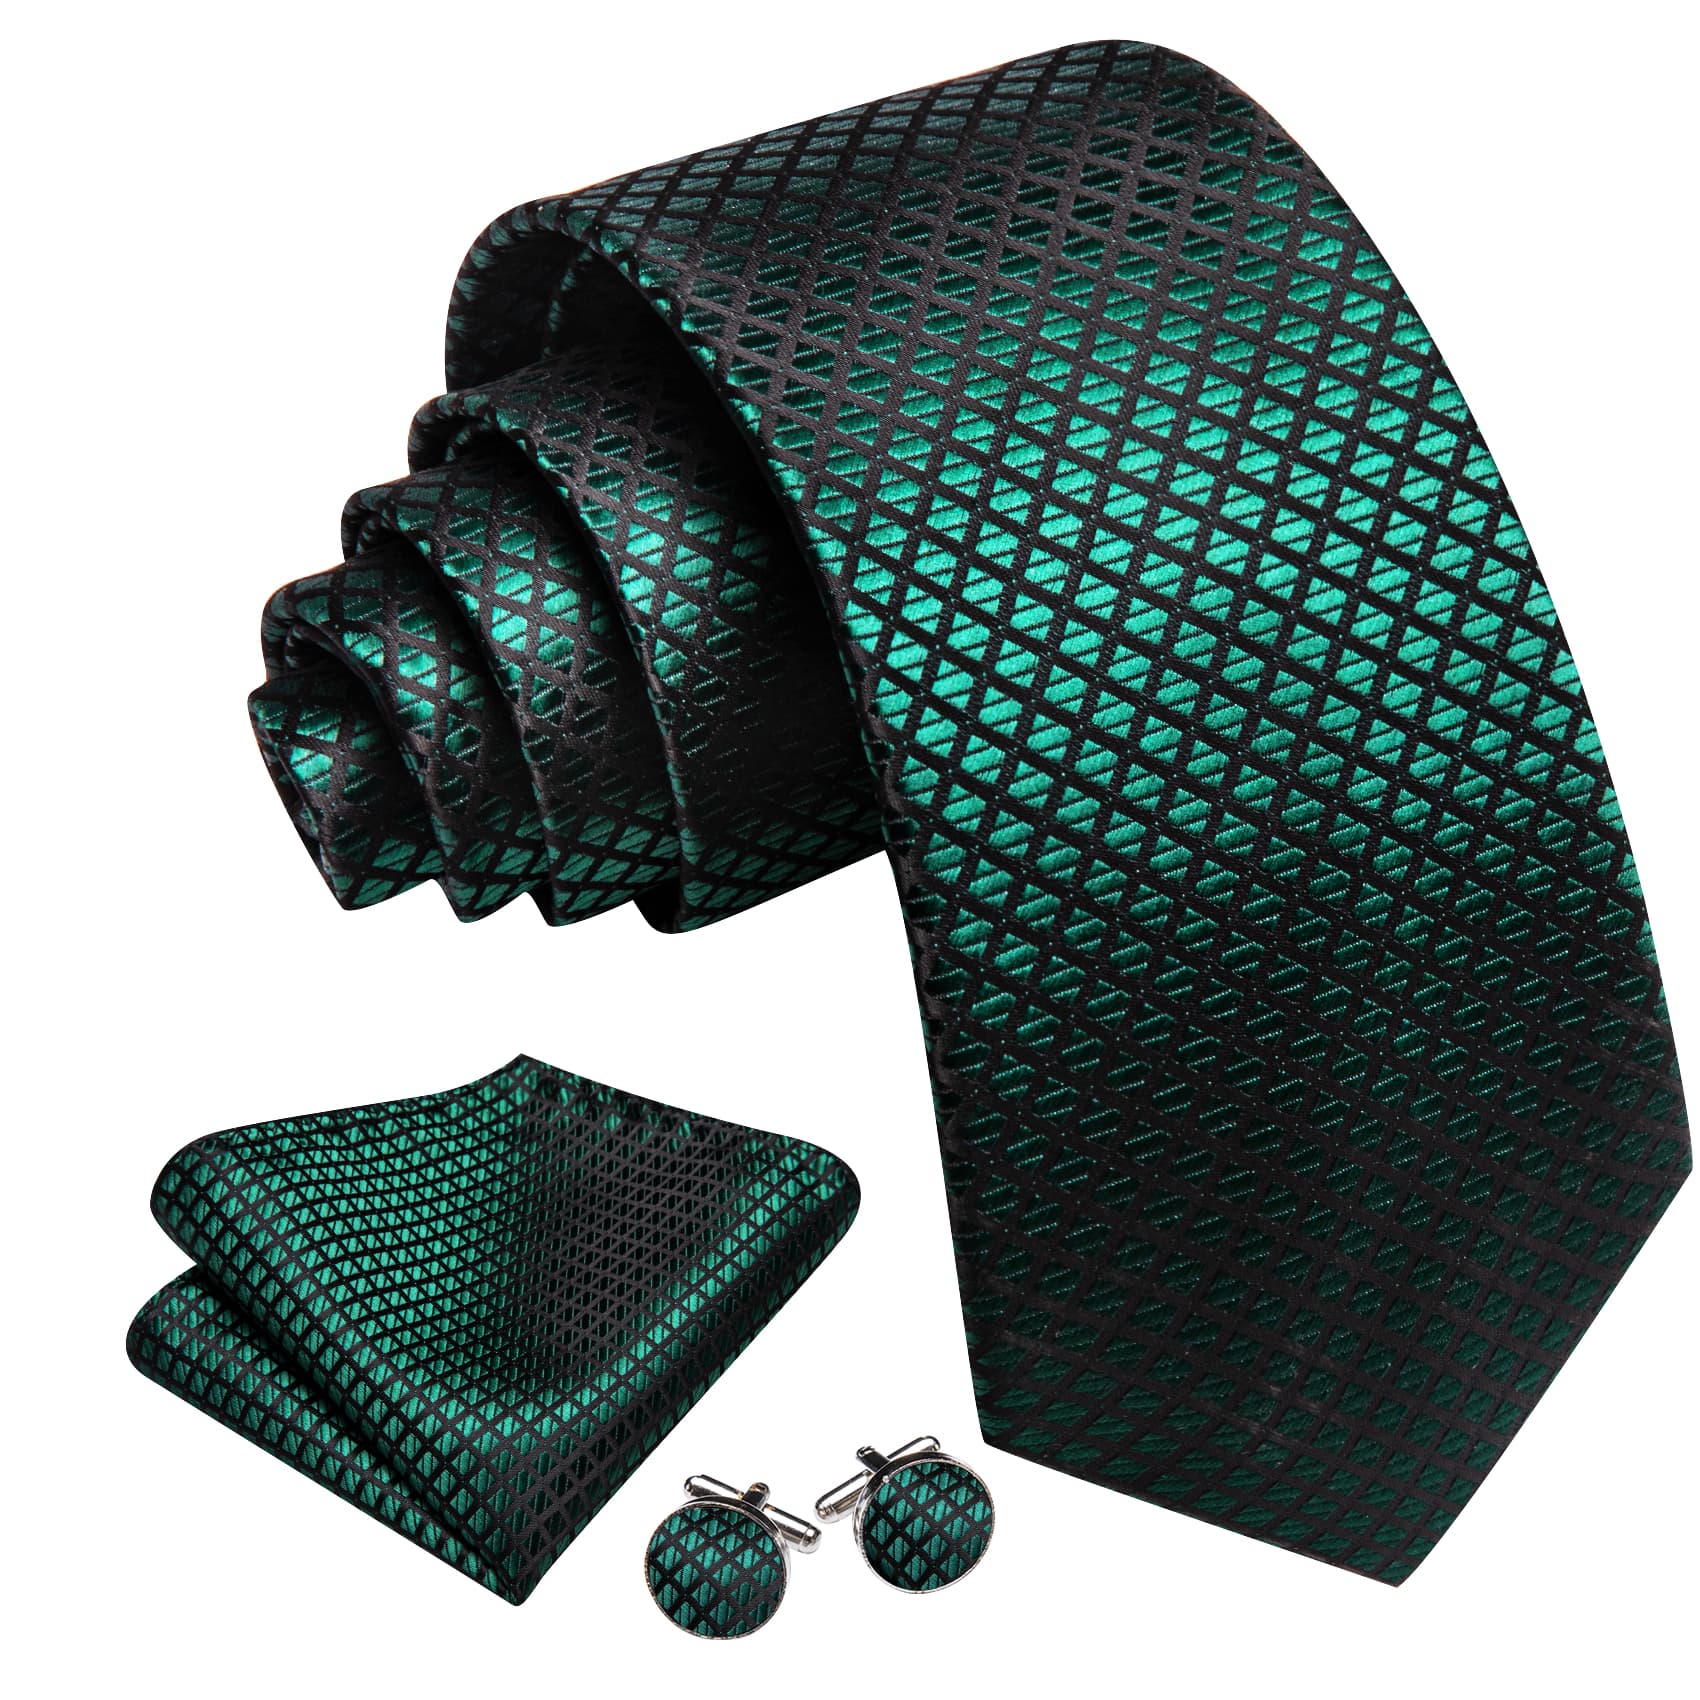  Plaid Tie Green Black Checkered Necktie and Cufflink Set